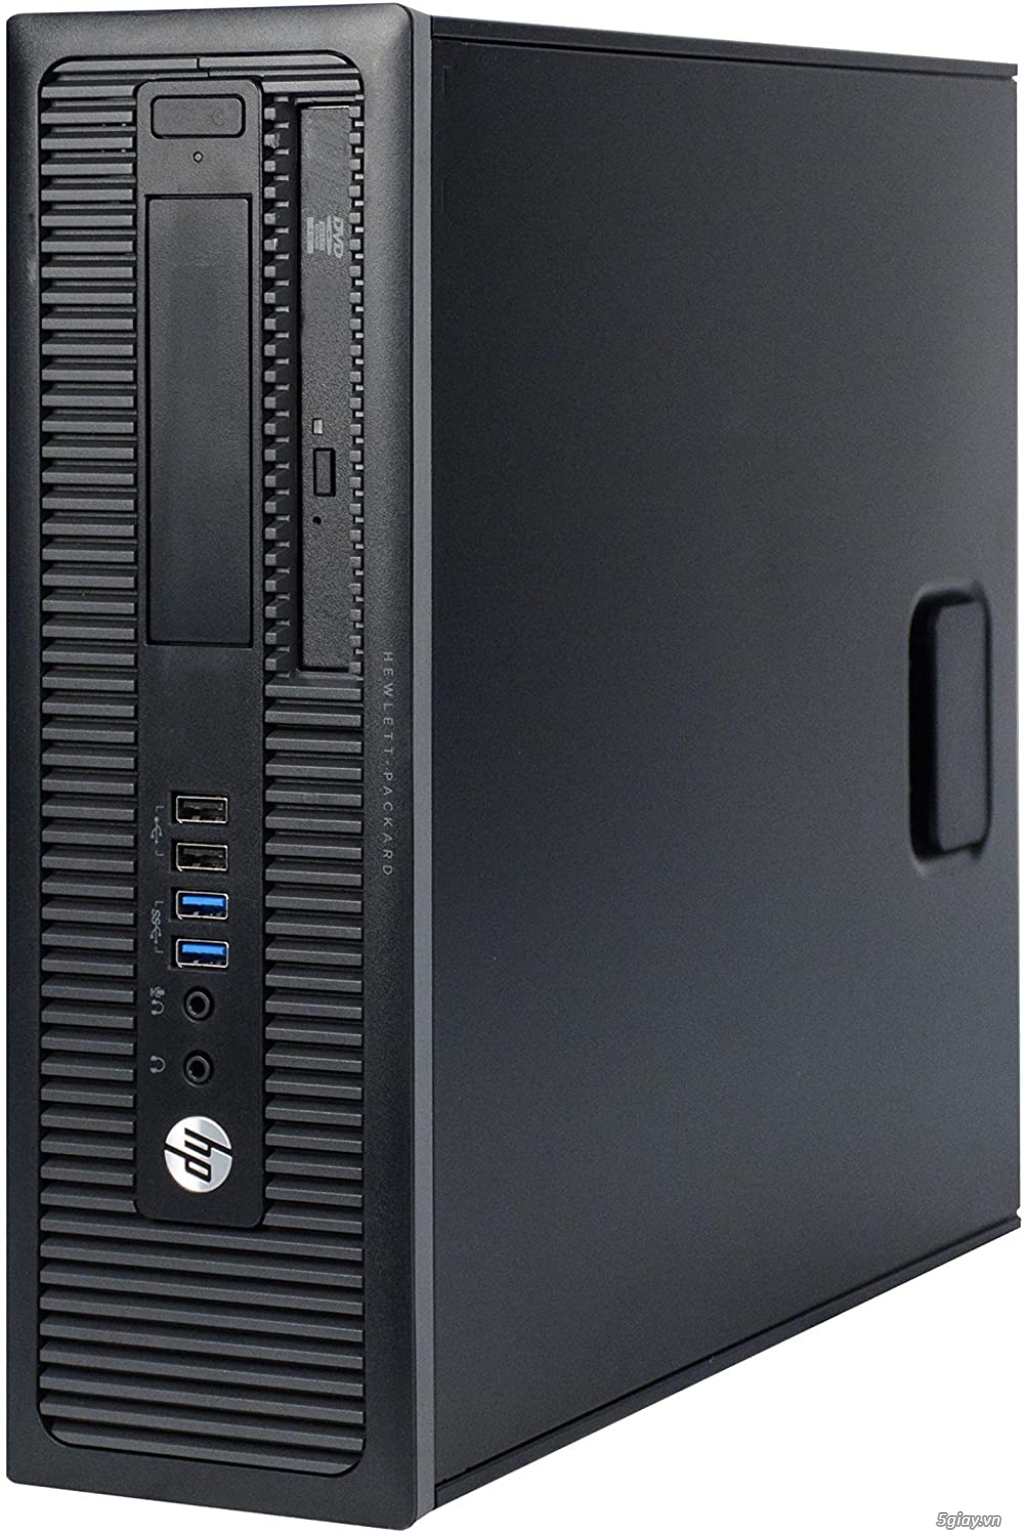 10 thùng HP 600G1 : i5 -4570 .Q87 .8gb ssd 128g ful box